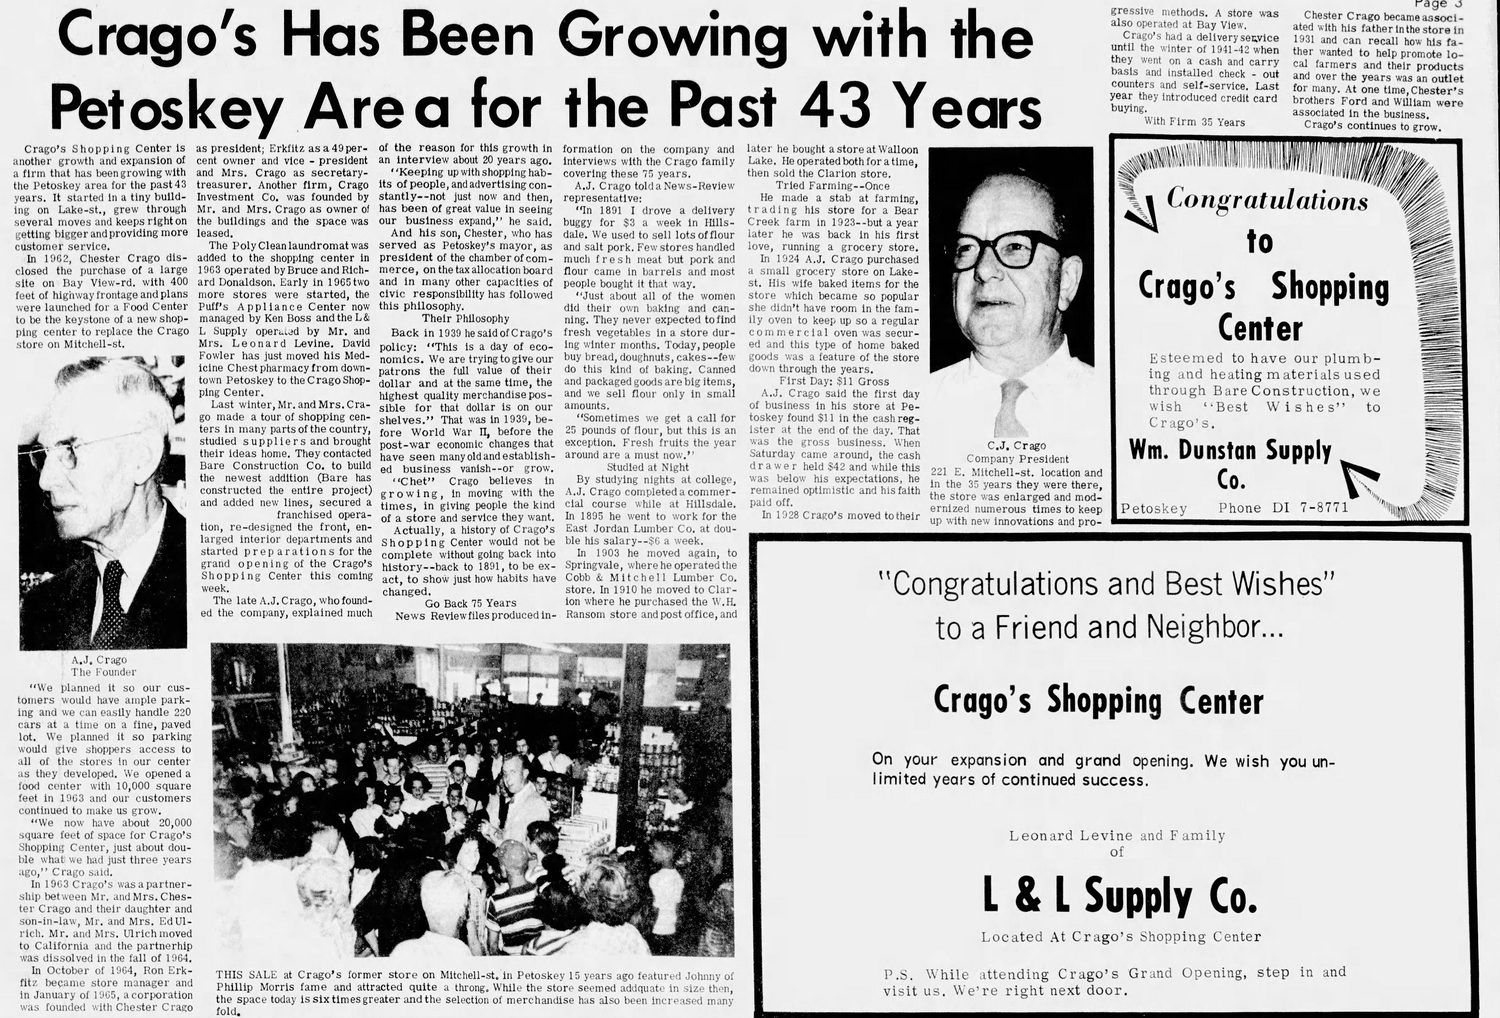 Cragos Shopping Center - July 1966 Article